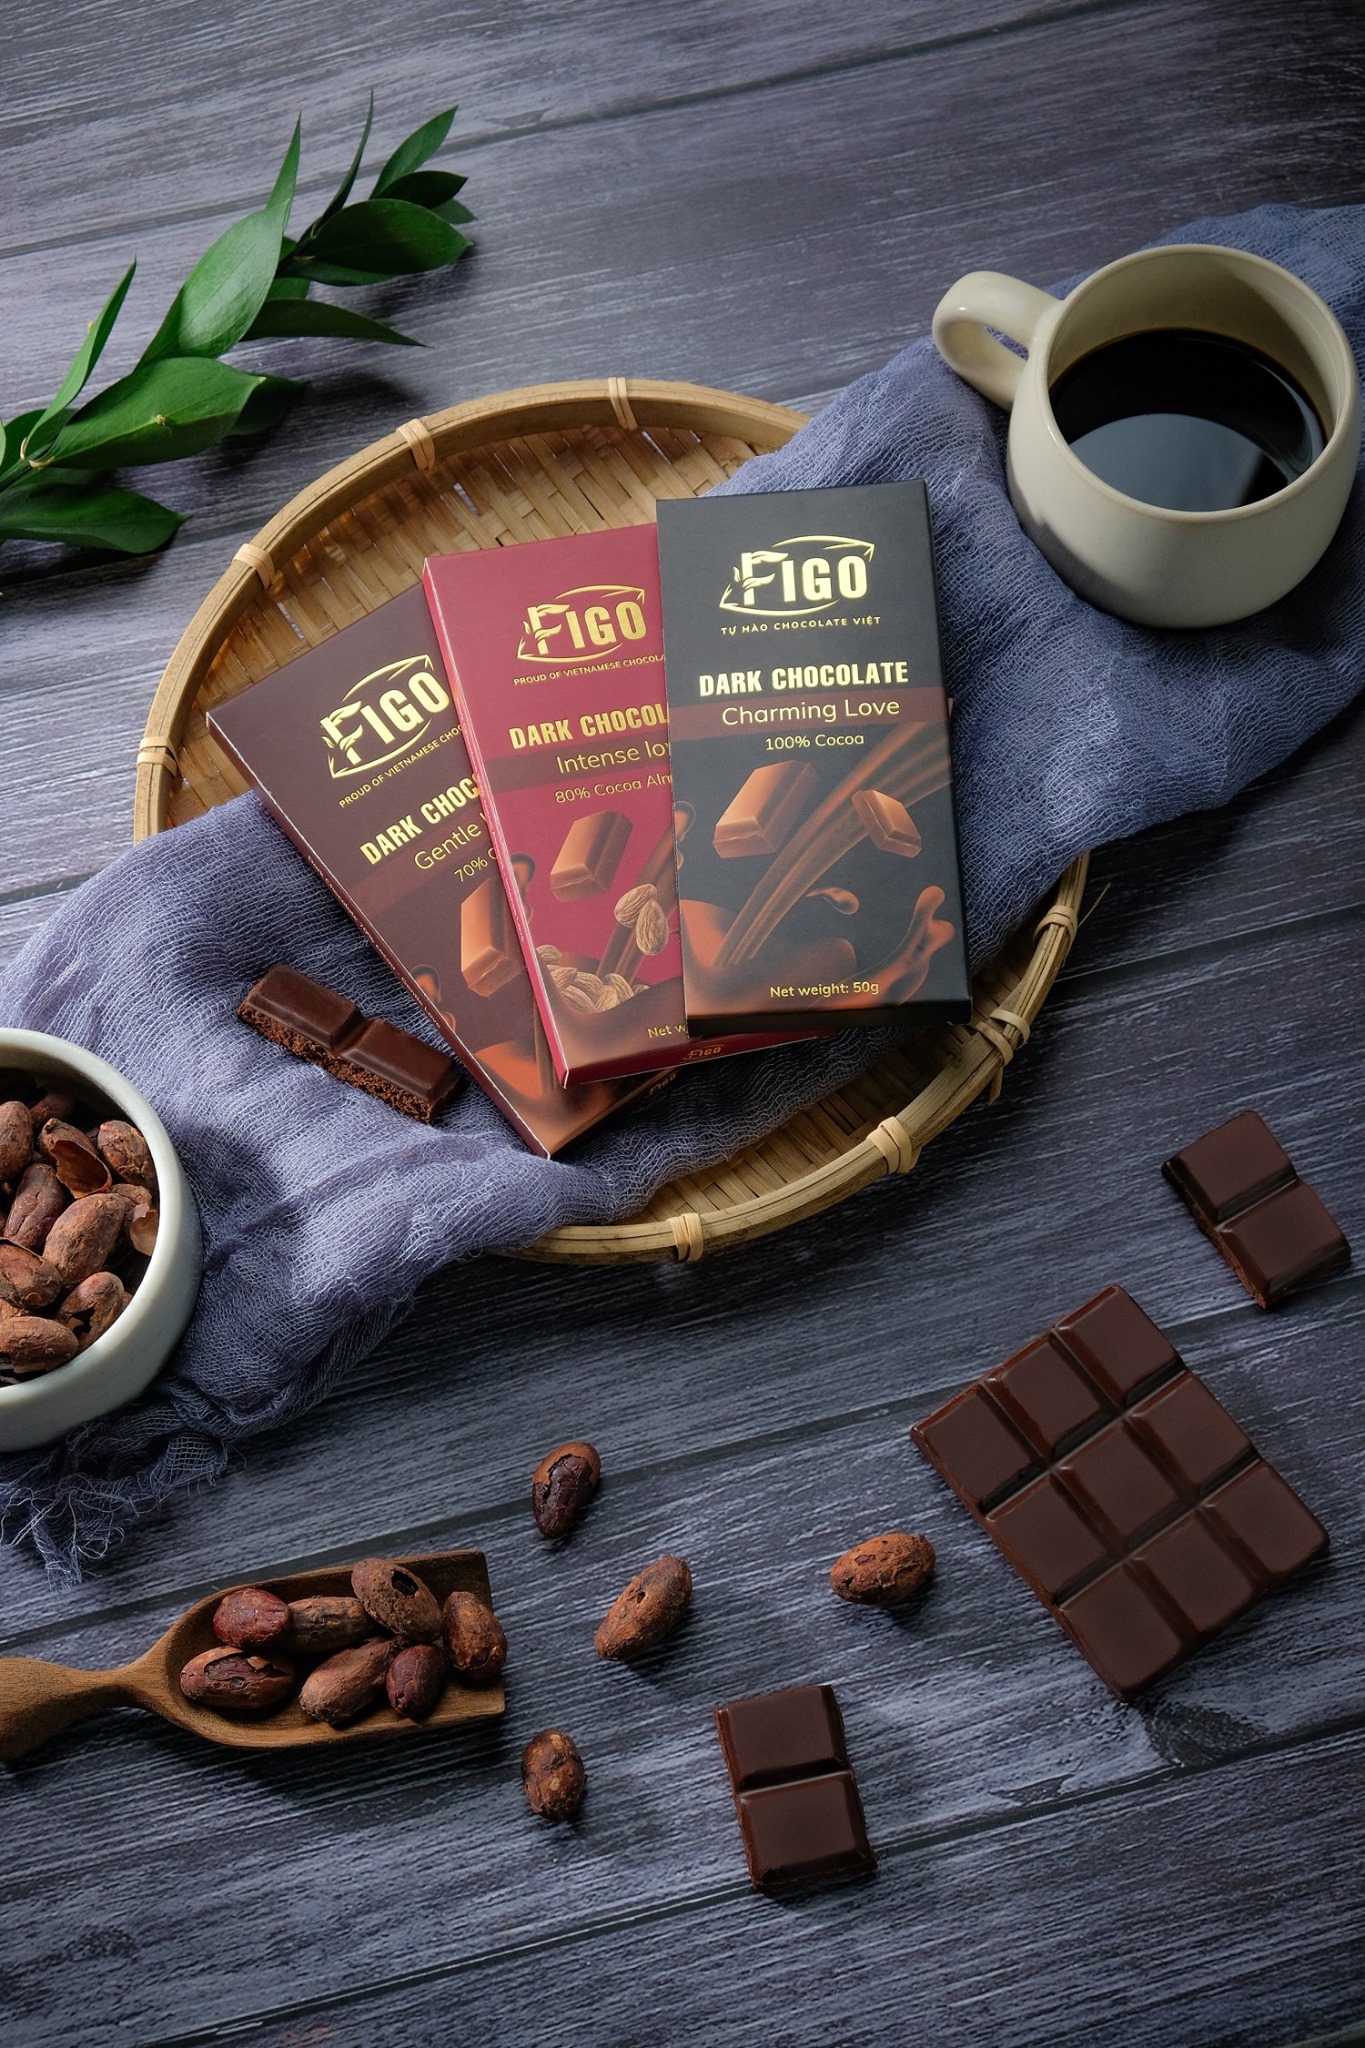 (Bar 50g) Socola đen nguyên chất không đường dòng Charming love 50g Figo - Vietnamese Chocolate